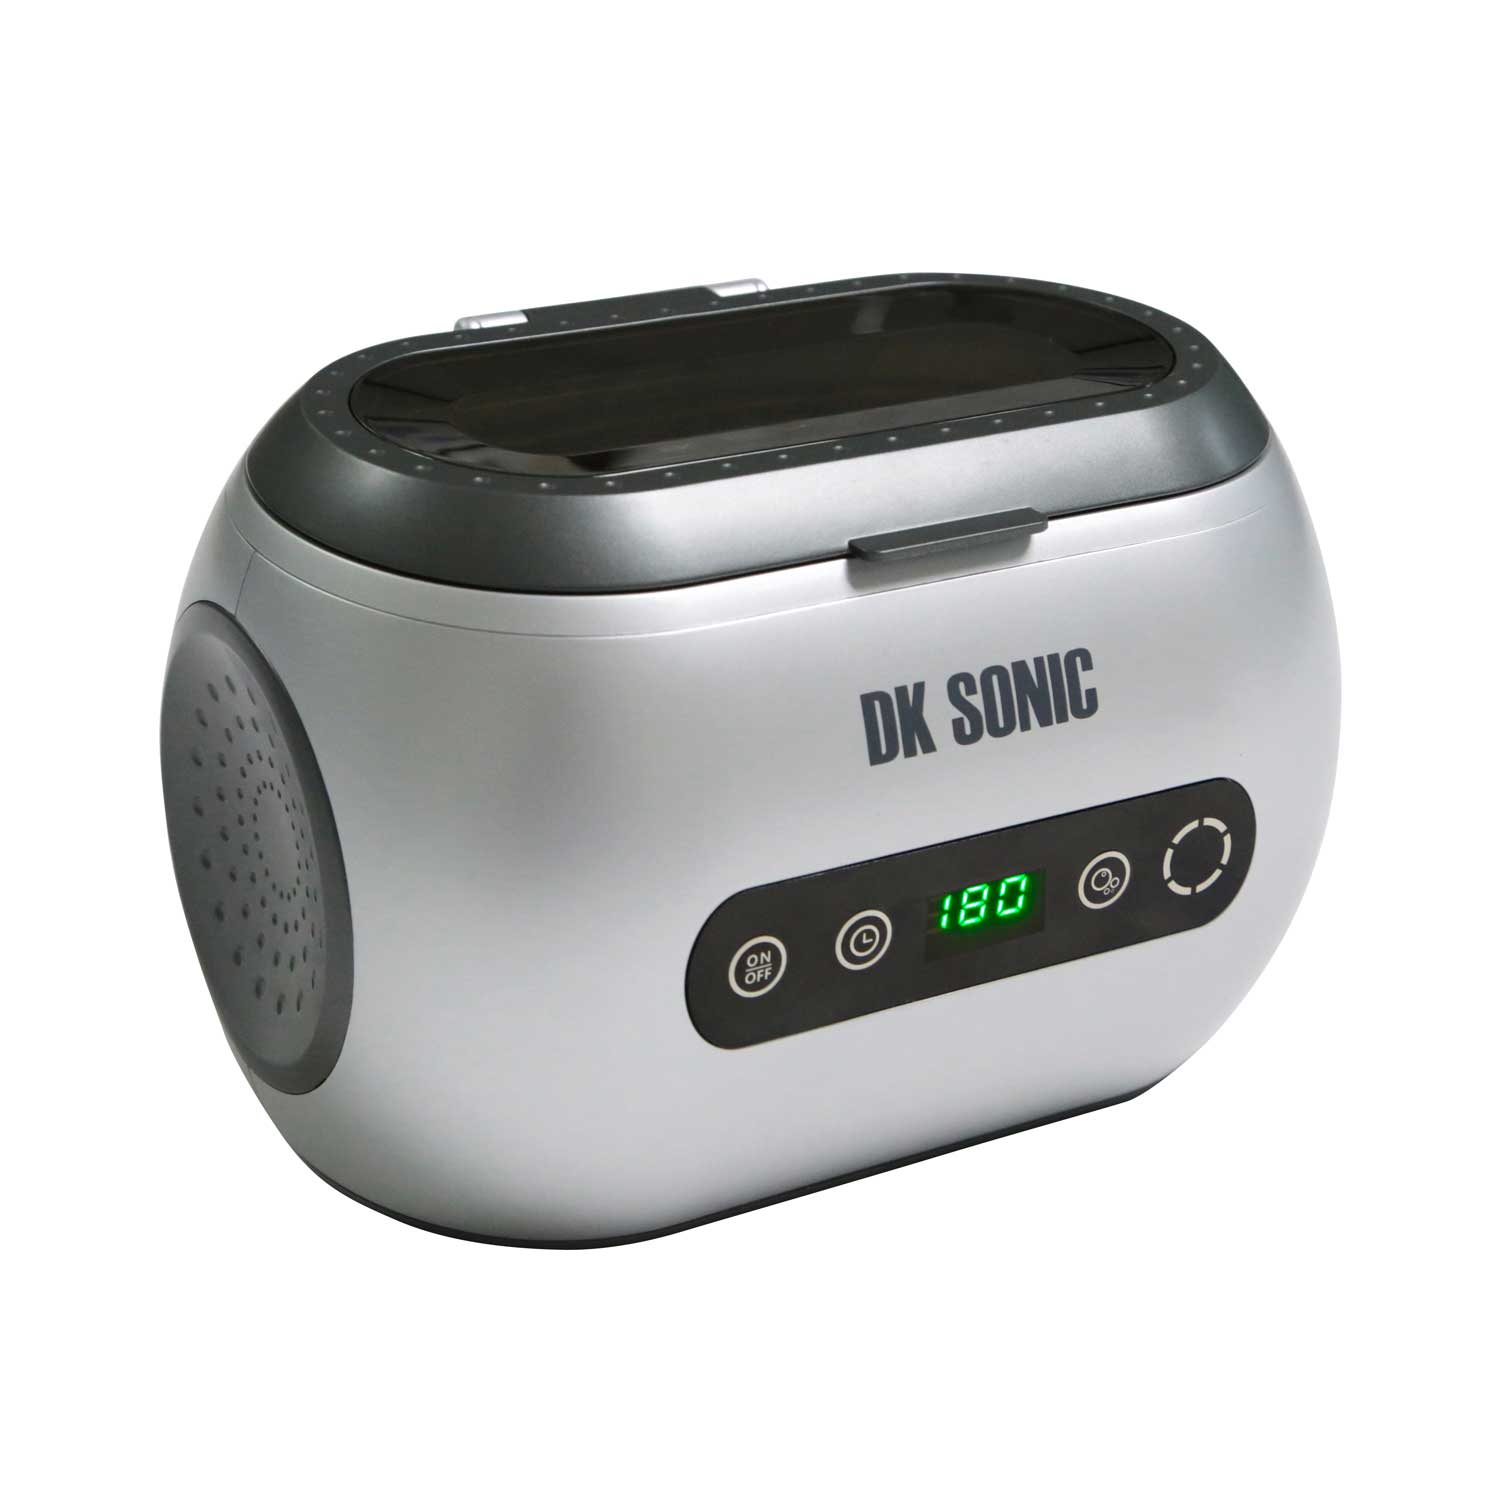 600ml Household ultrasonic Cleaner - DK SONIC